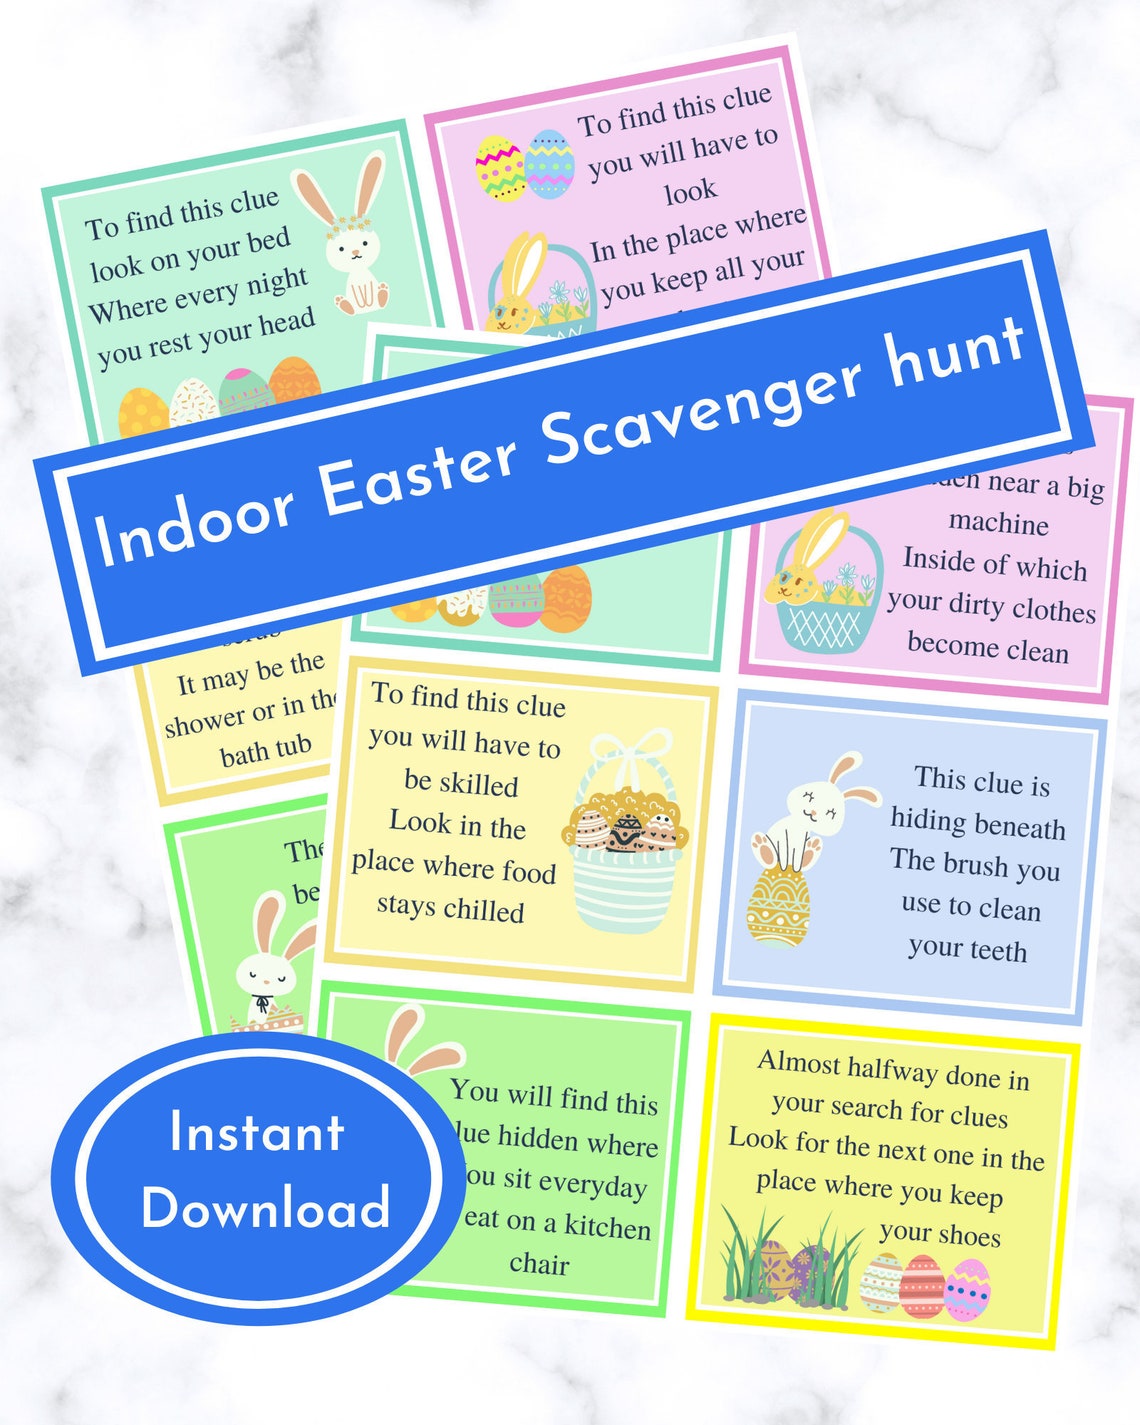 Indoor Easter Scavenger Hunt Easter Egg Hunt Clues Printable - Etsy